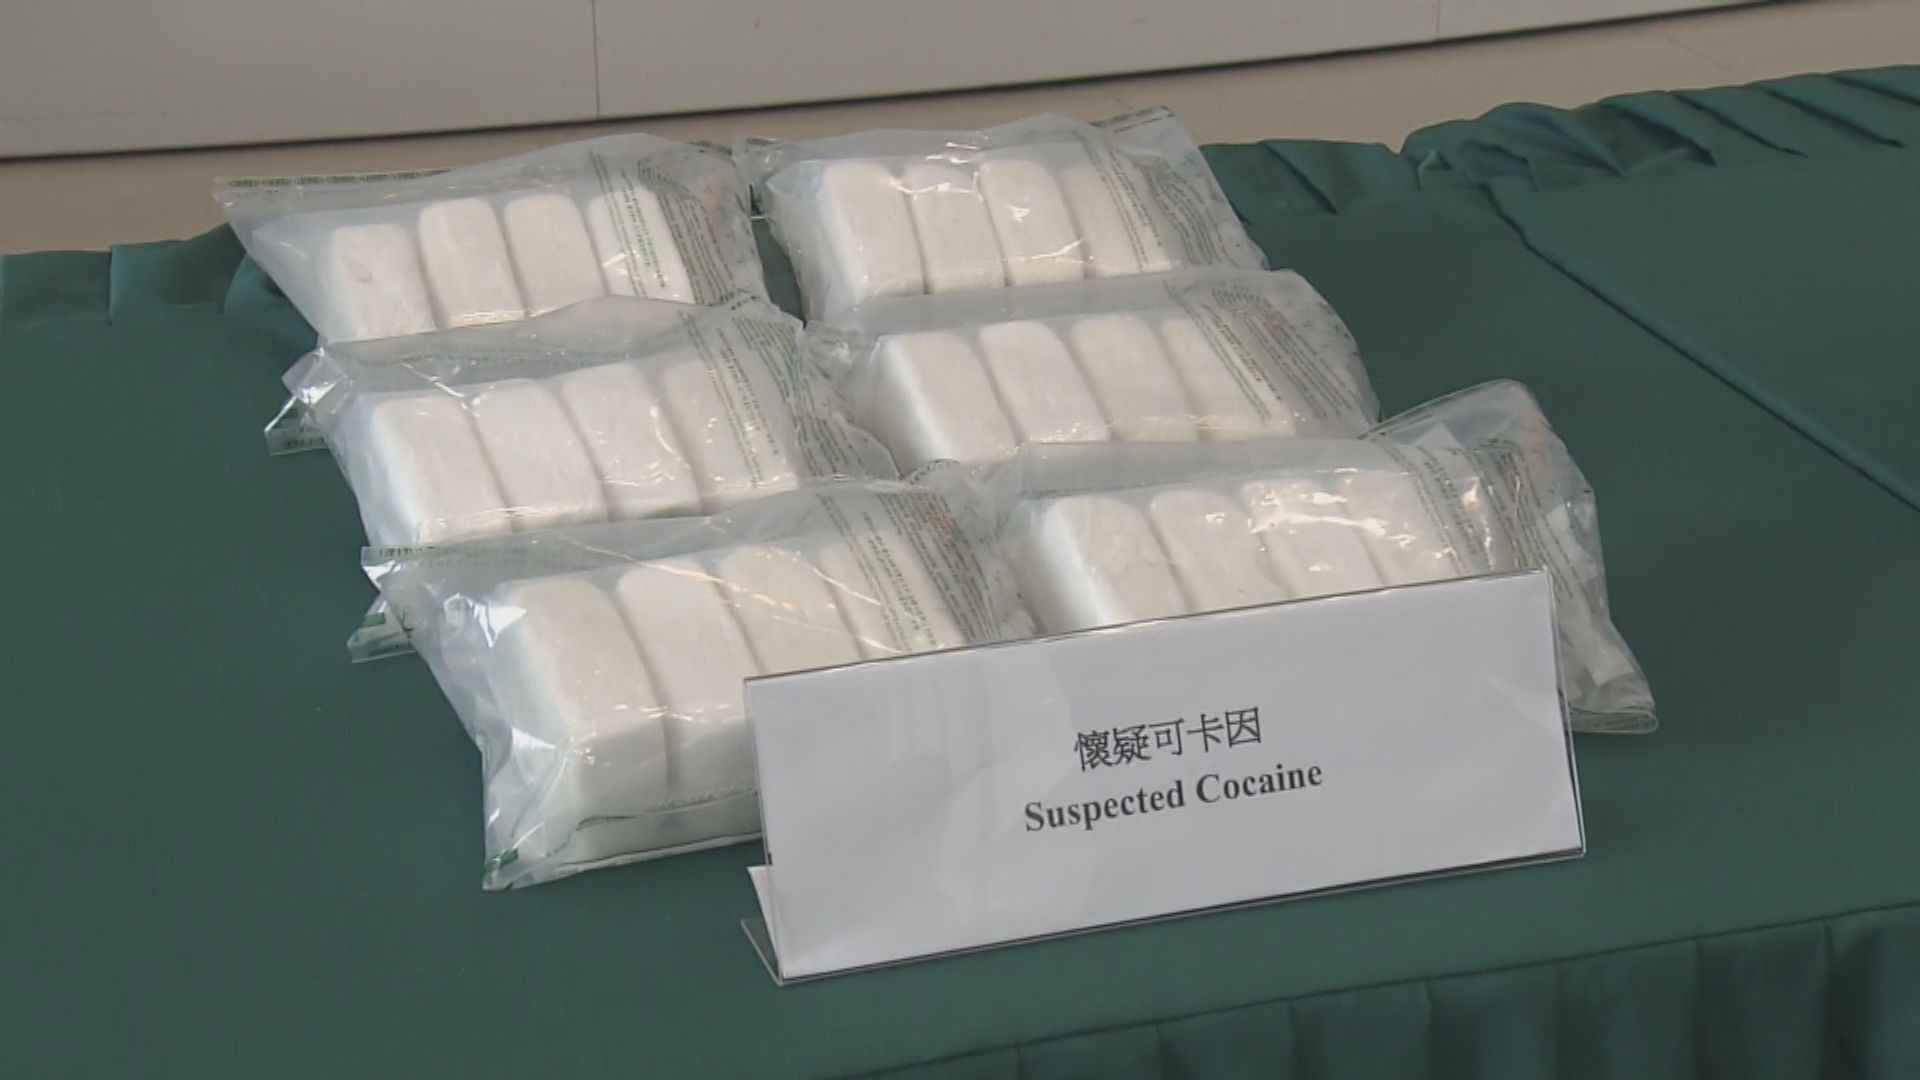 海關機場截獲6公斤可卡因 2外籍遊客涉販毒被捕